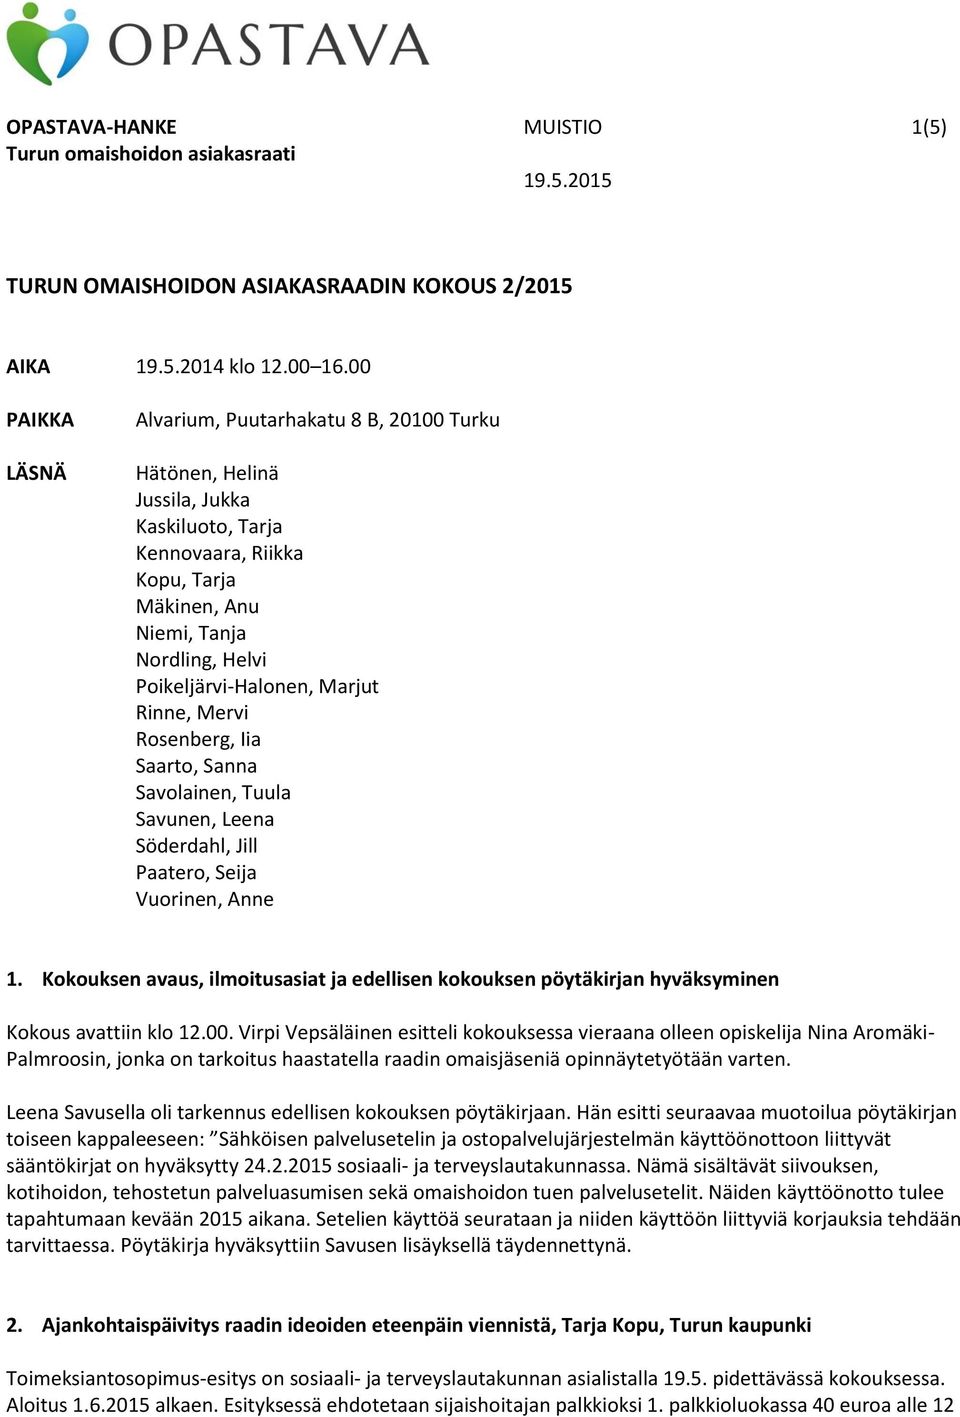 Marjut Rinne, Mervi Rosenberg, Iia Saarto, Sanna Savolainen, Tuula Savunen, Leena Söderdahl, Jill Paatero, Seija Vuorinen, Anne 1.